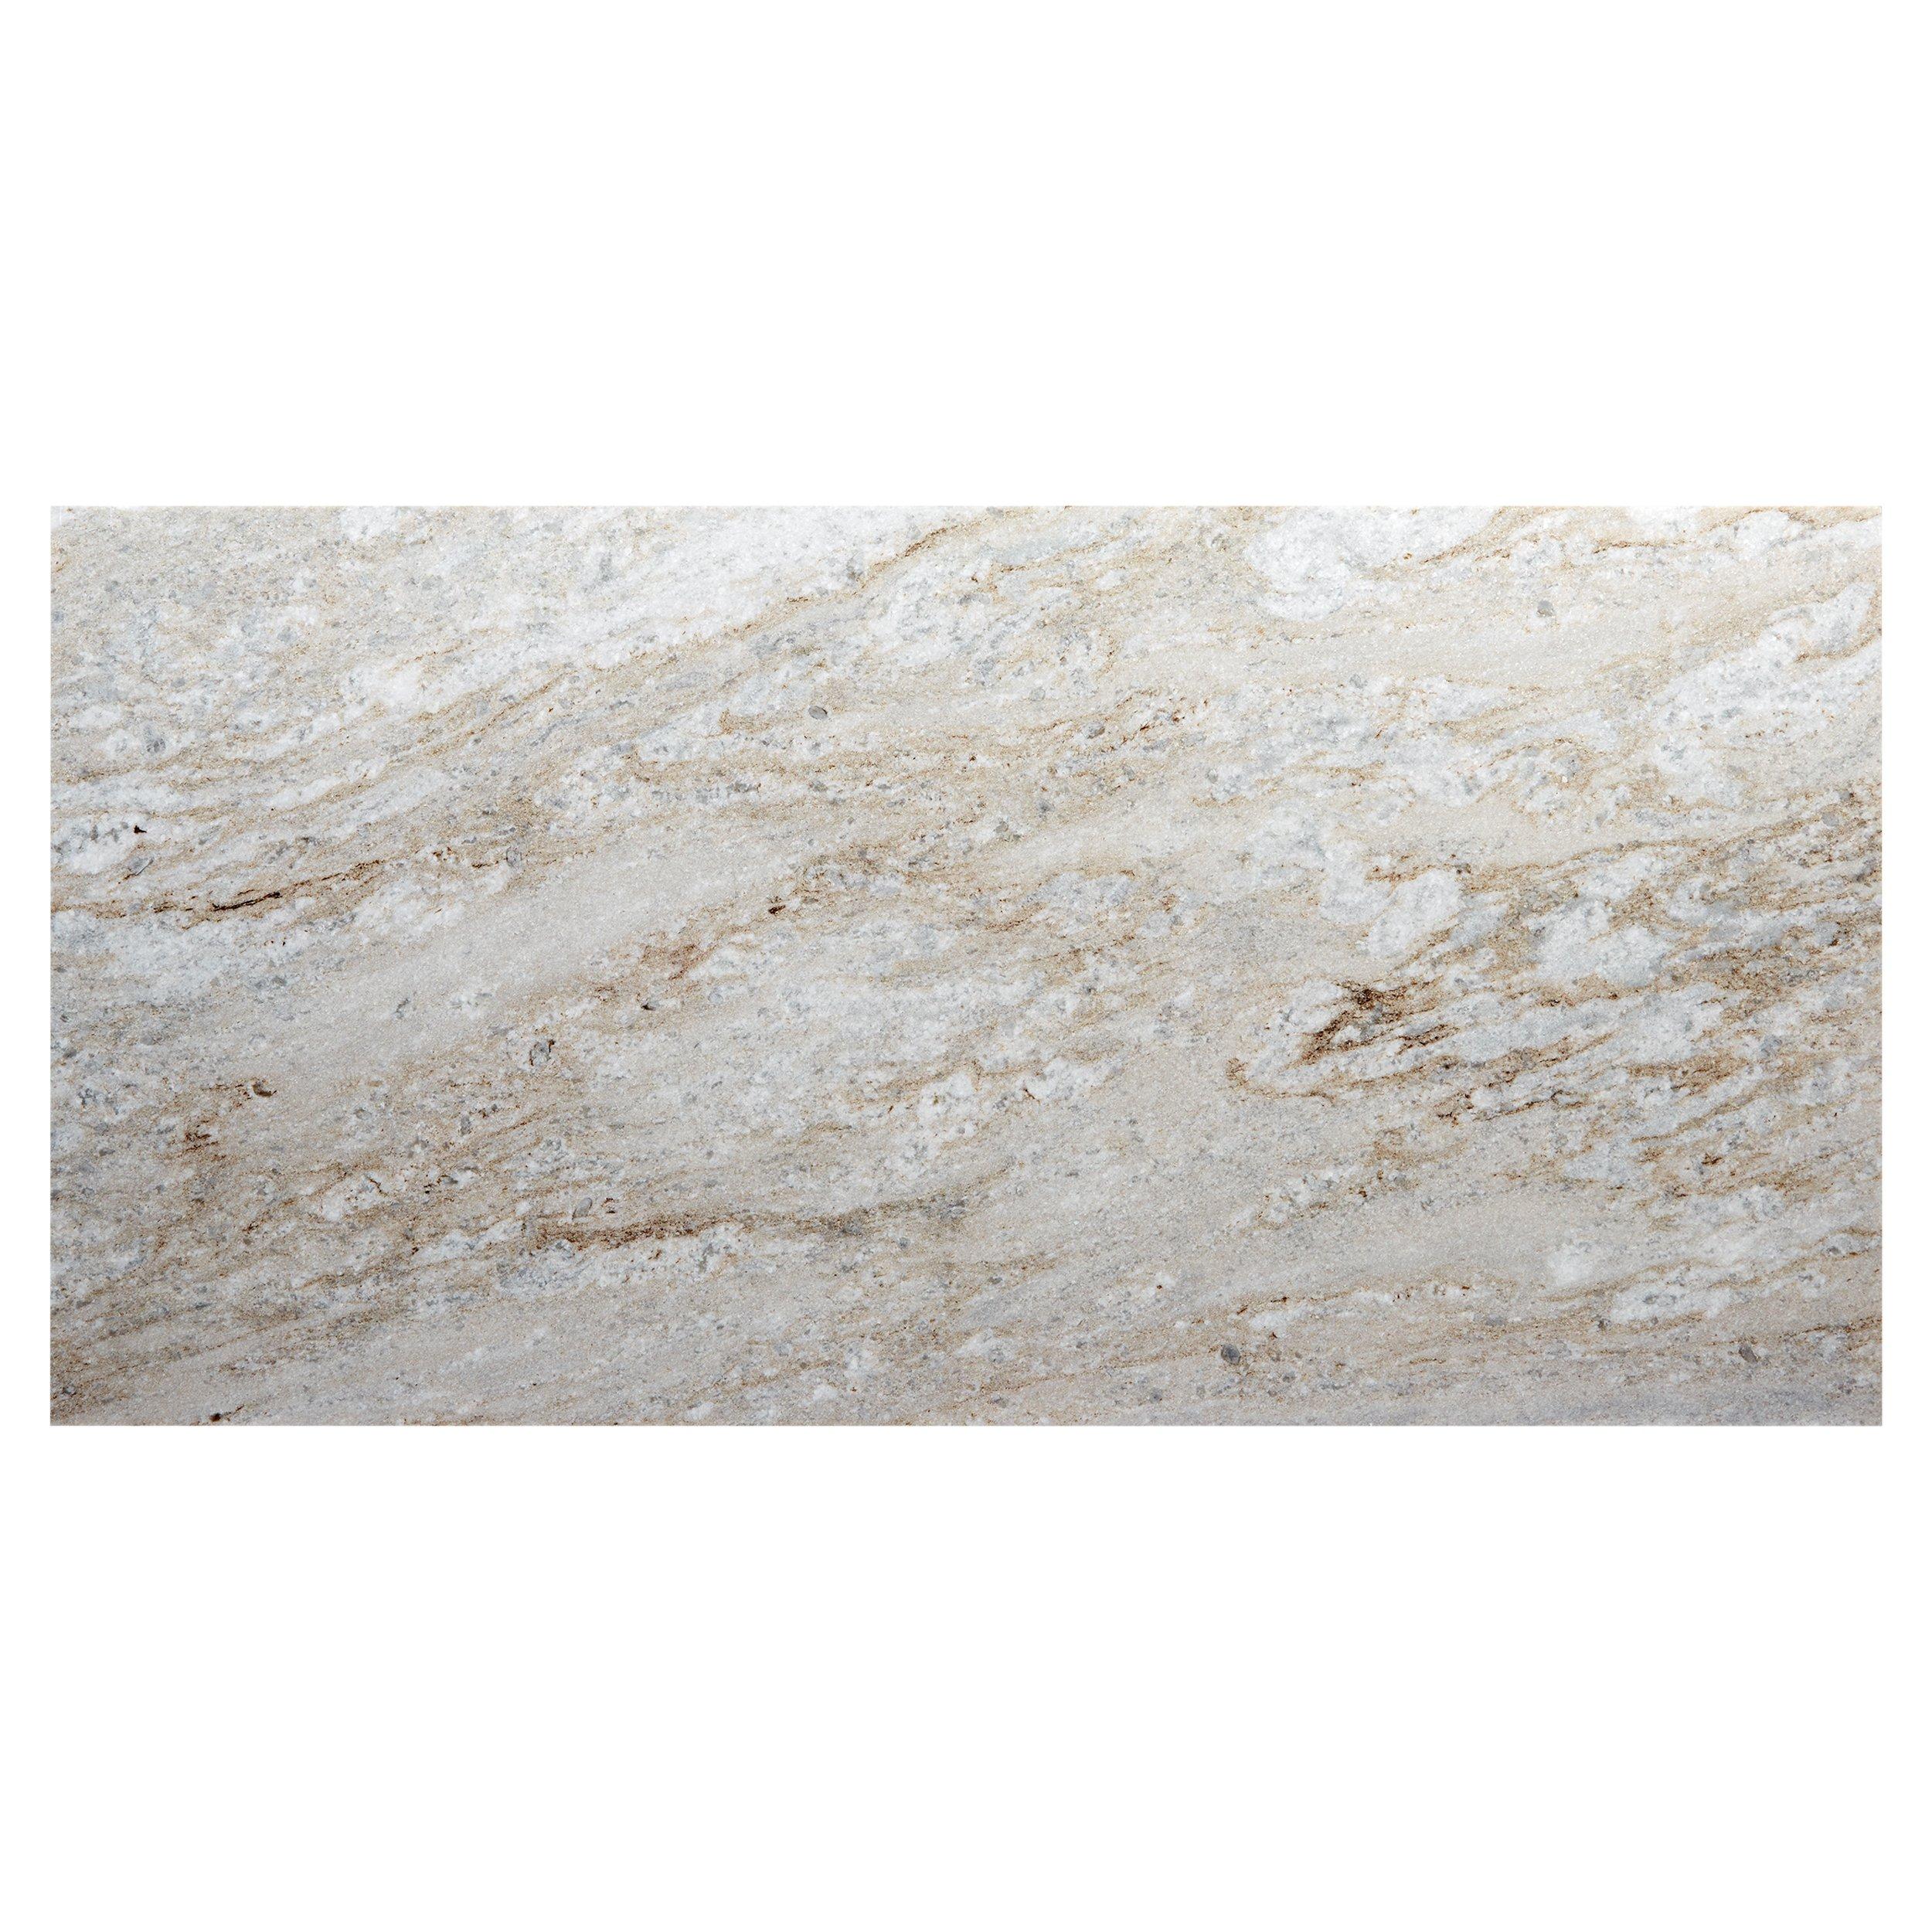 Olympus White Crosscut Honed Quartzite Tile